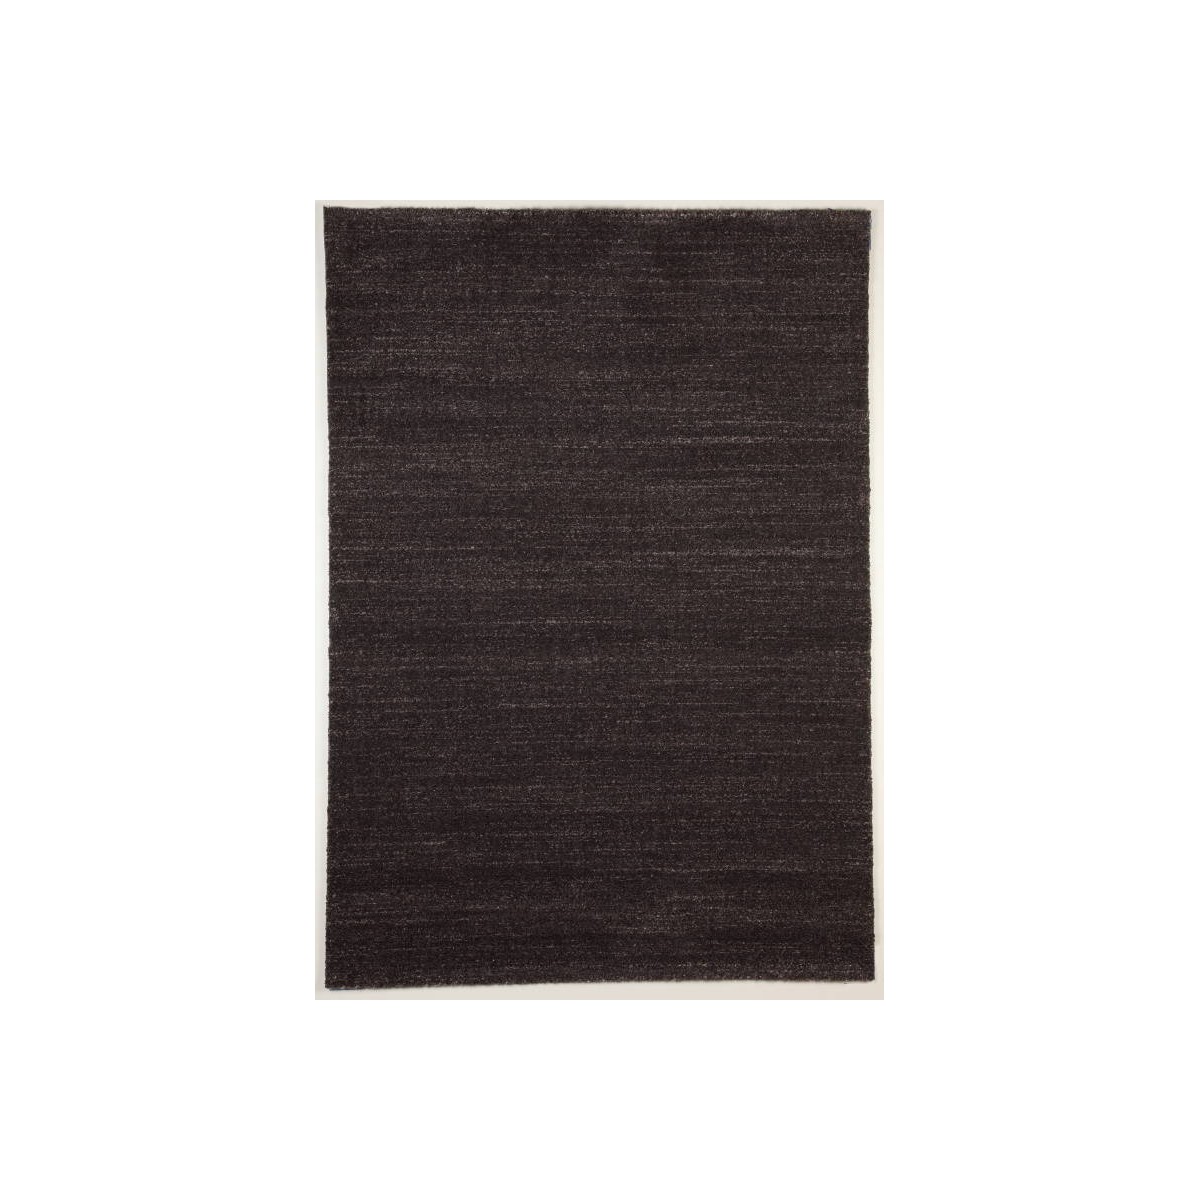 Tappeti, salotto moderno e modellato 80 X 150 cm moda moderna GABEH  (marrone scuro - marrone scuro) - AMP Story 4554